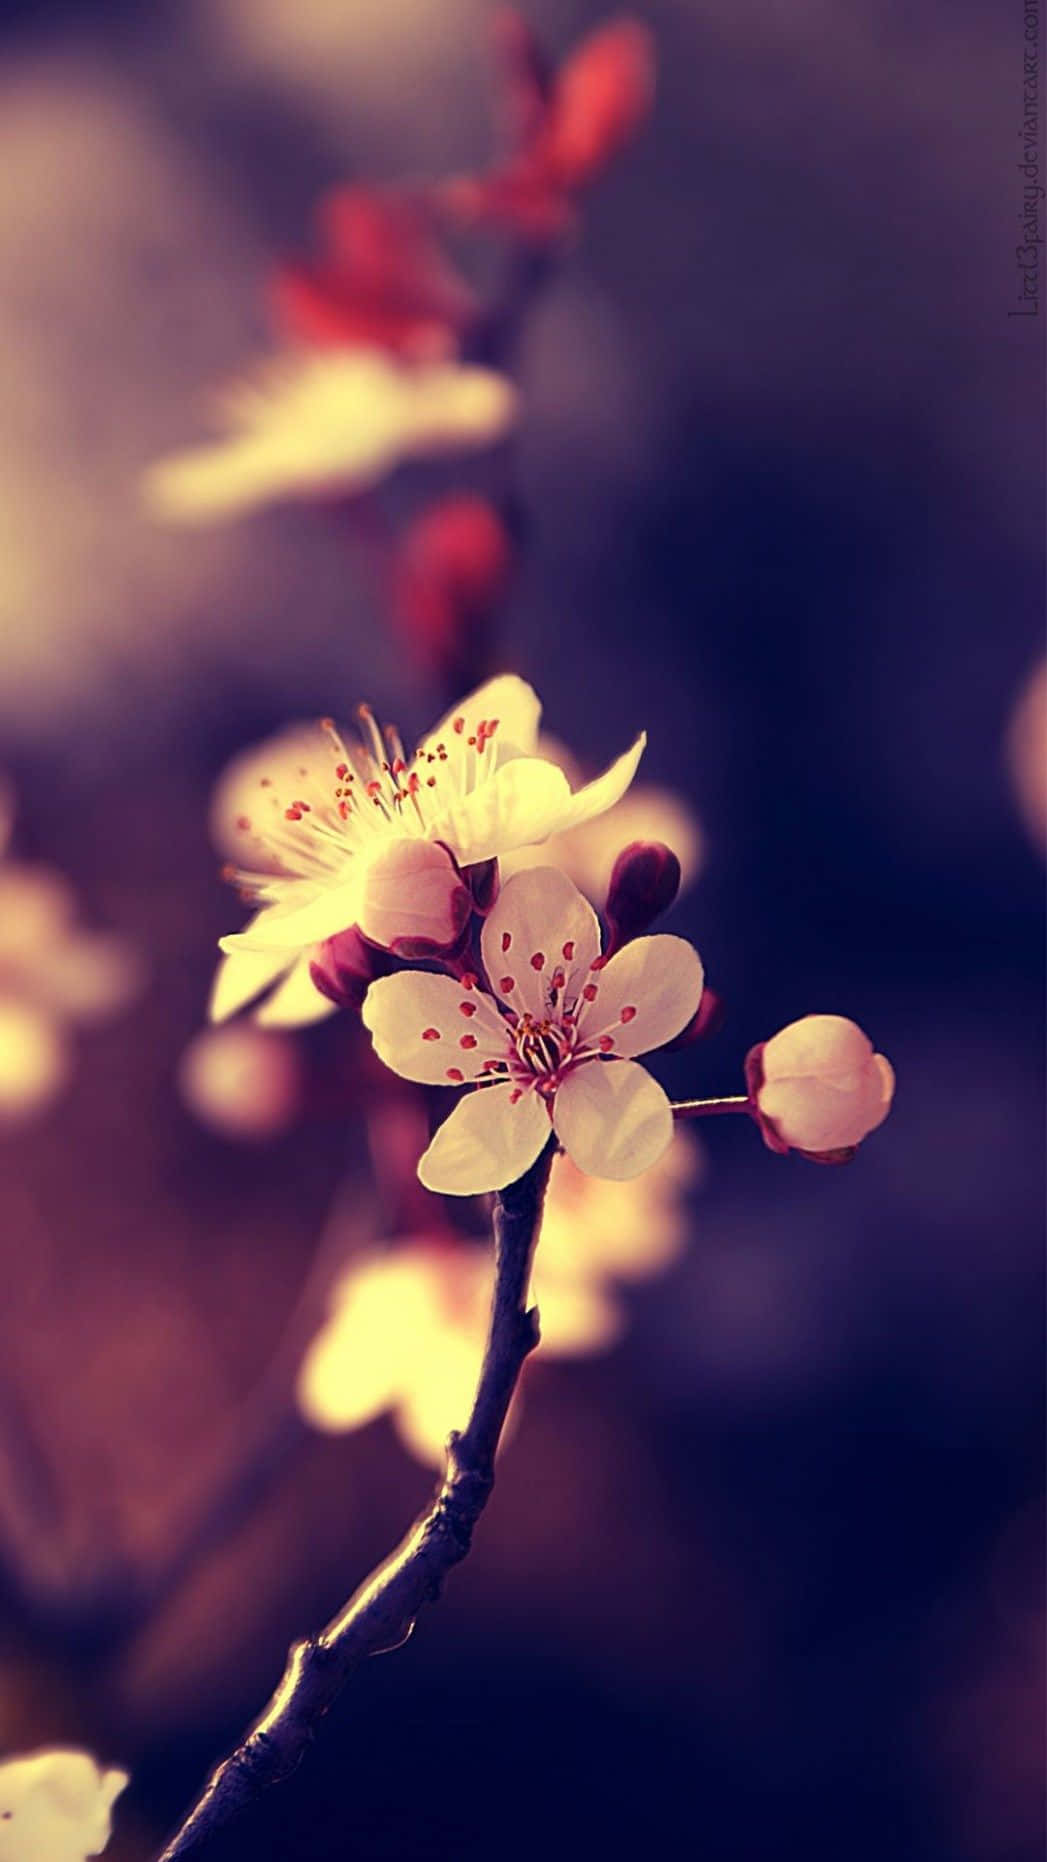 Cute Flower Photograph Wallpaper